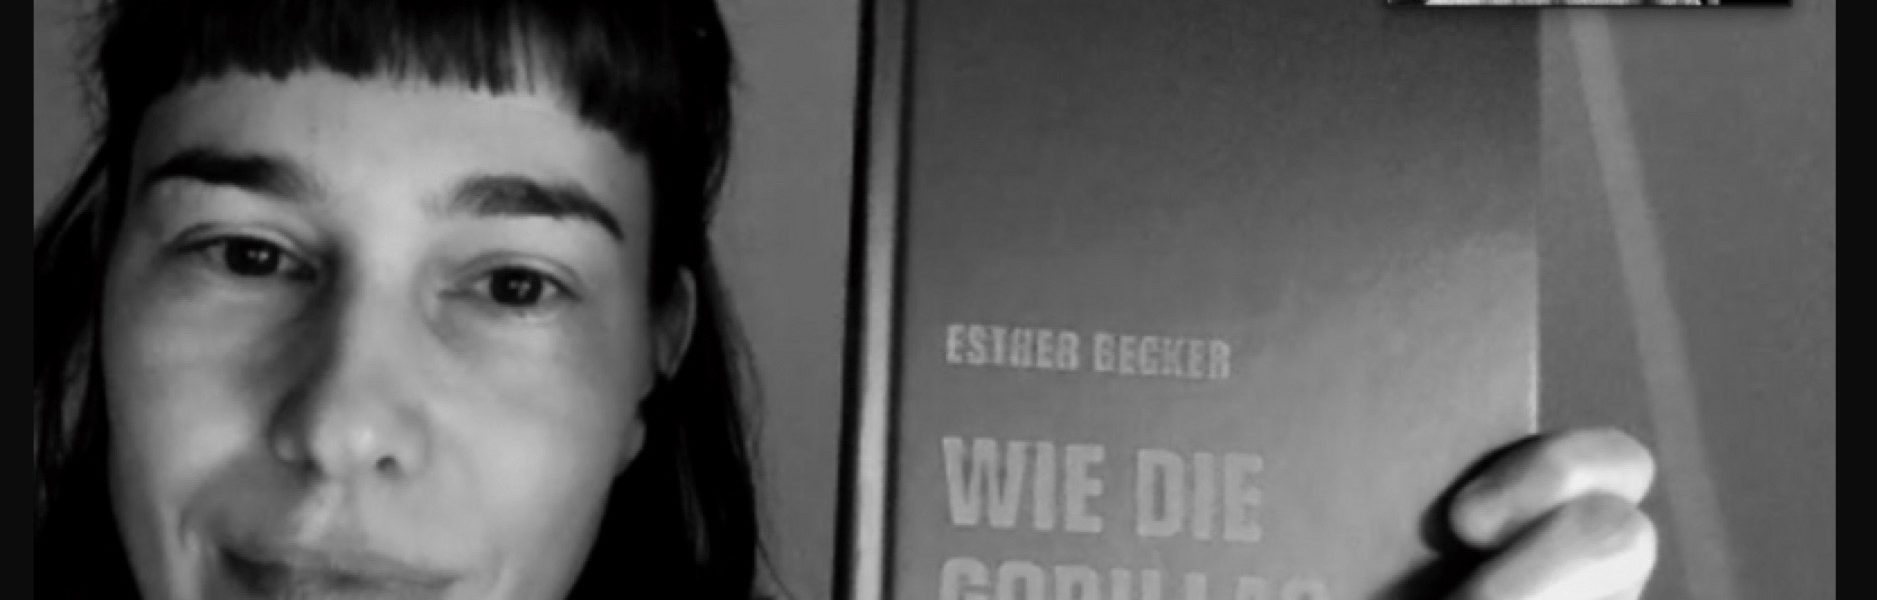 02 ESTHERBECKER 2 Debütanz Folge 02: Esther Becker